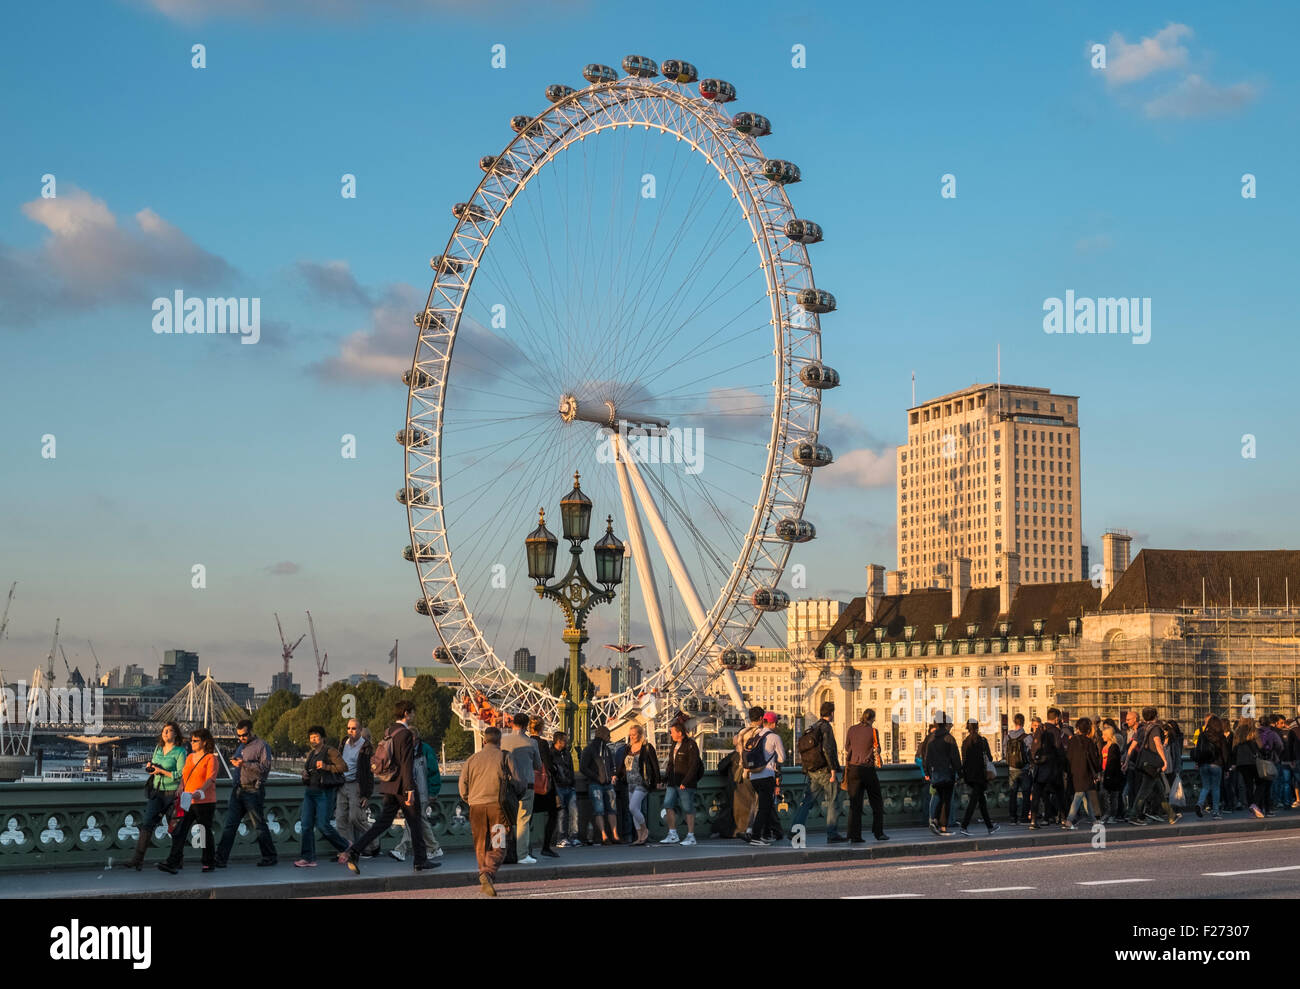 London Eye vue à partir de la destination touristique populaire à proximité de Westminster Bridge, Londres, Angleterre, Royaume-Uni Banque D'Images